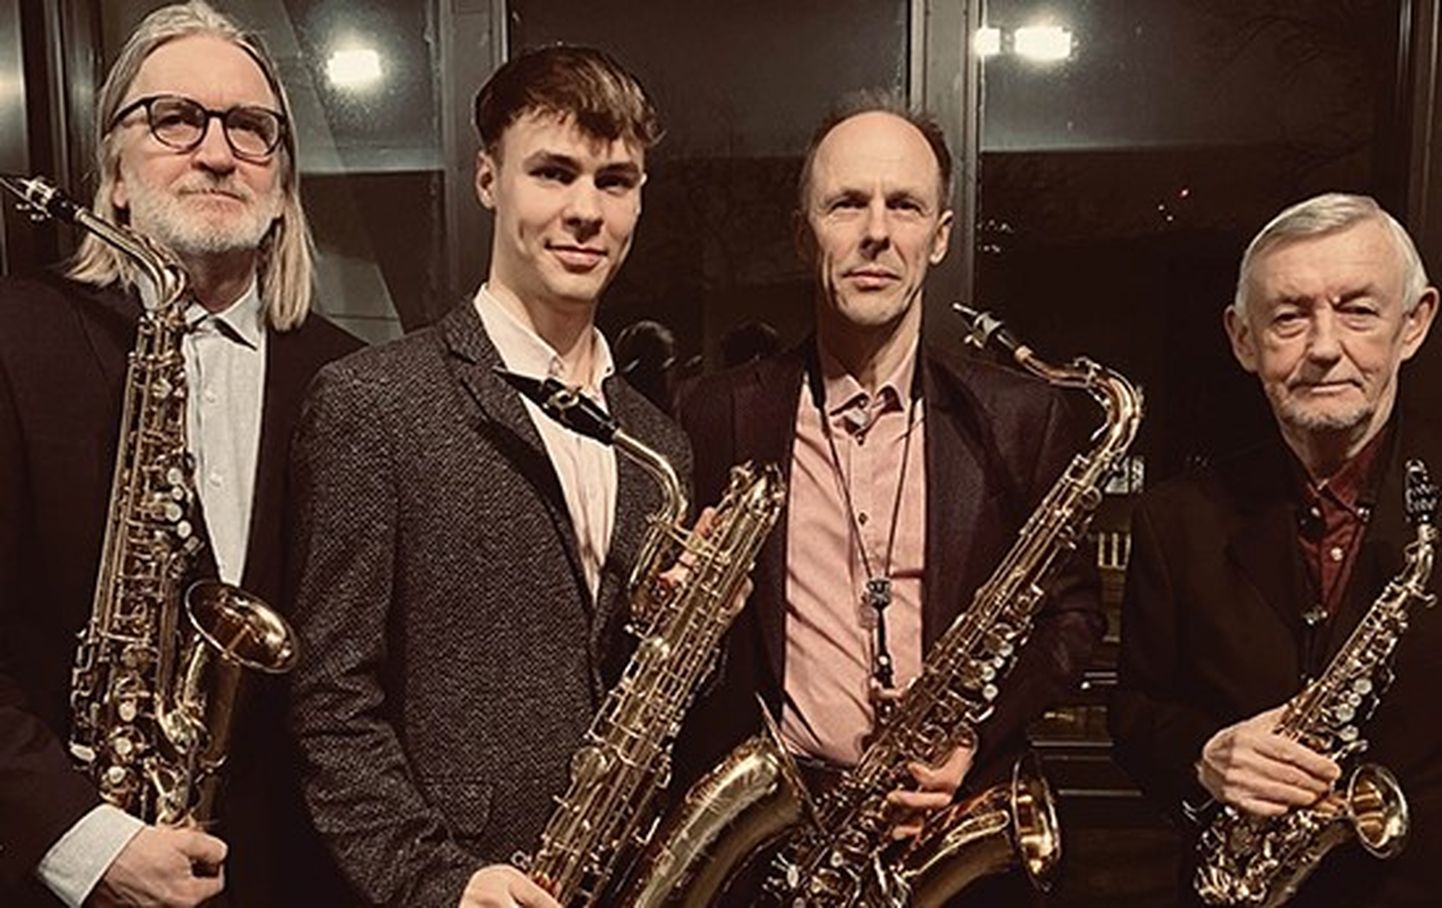 Tänavuse festivali avakontserdil esineb Tallinna saksofonikvartett.